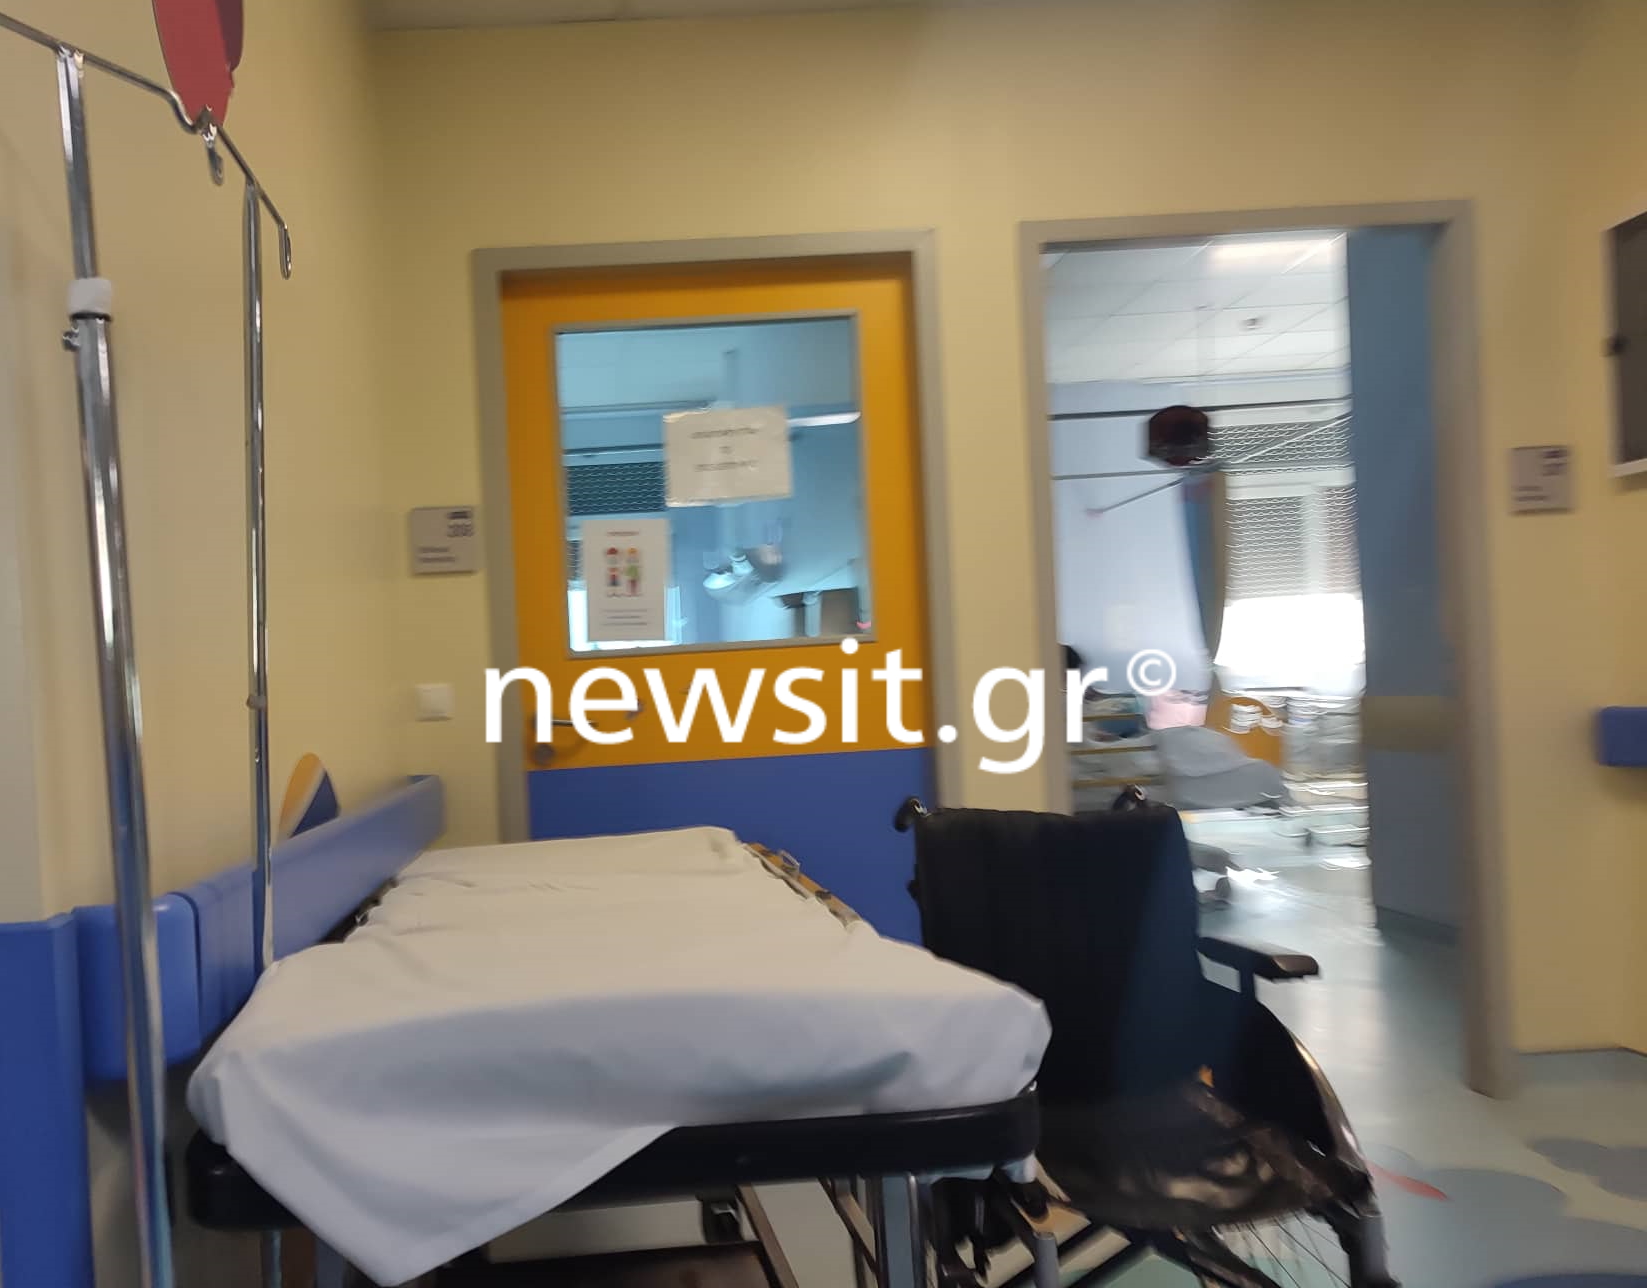 Σε απομόνωση ο 14χρονος που κατηγορείται για σεξουαλική παρενόχληση 7χρονου στο Παίδων – Αποθήκες παιδιών τα νοσοκομεία